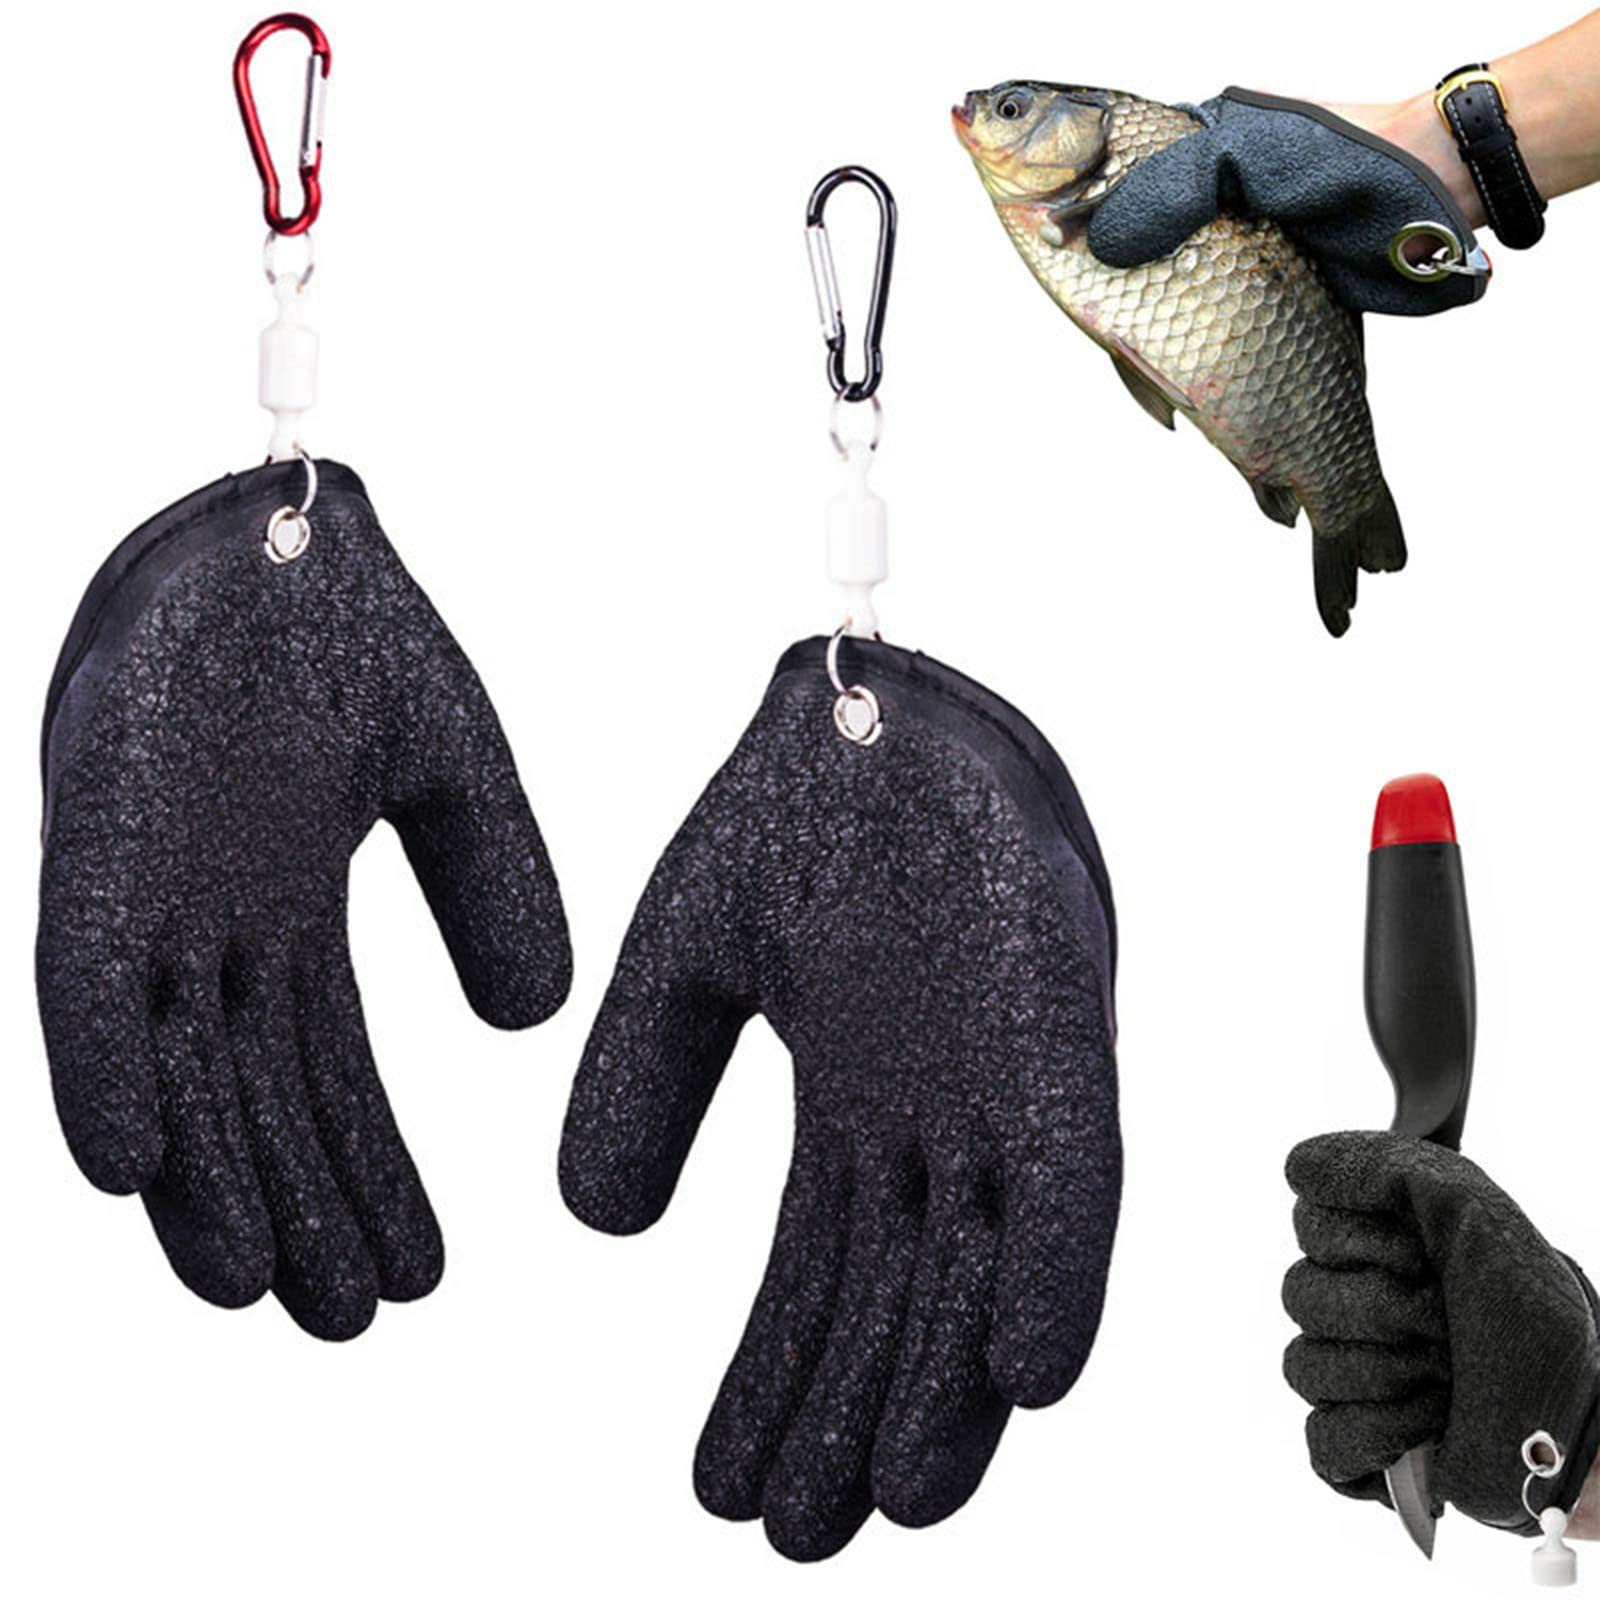 Maximumcatch Elastic Neoprene Fishing Gloves Waterproof Anti-Slip